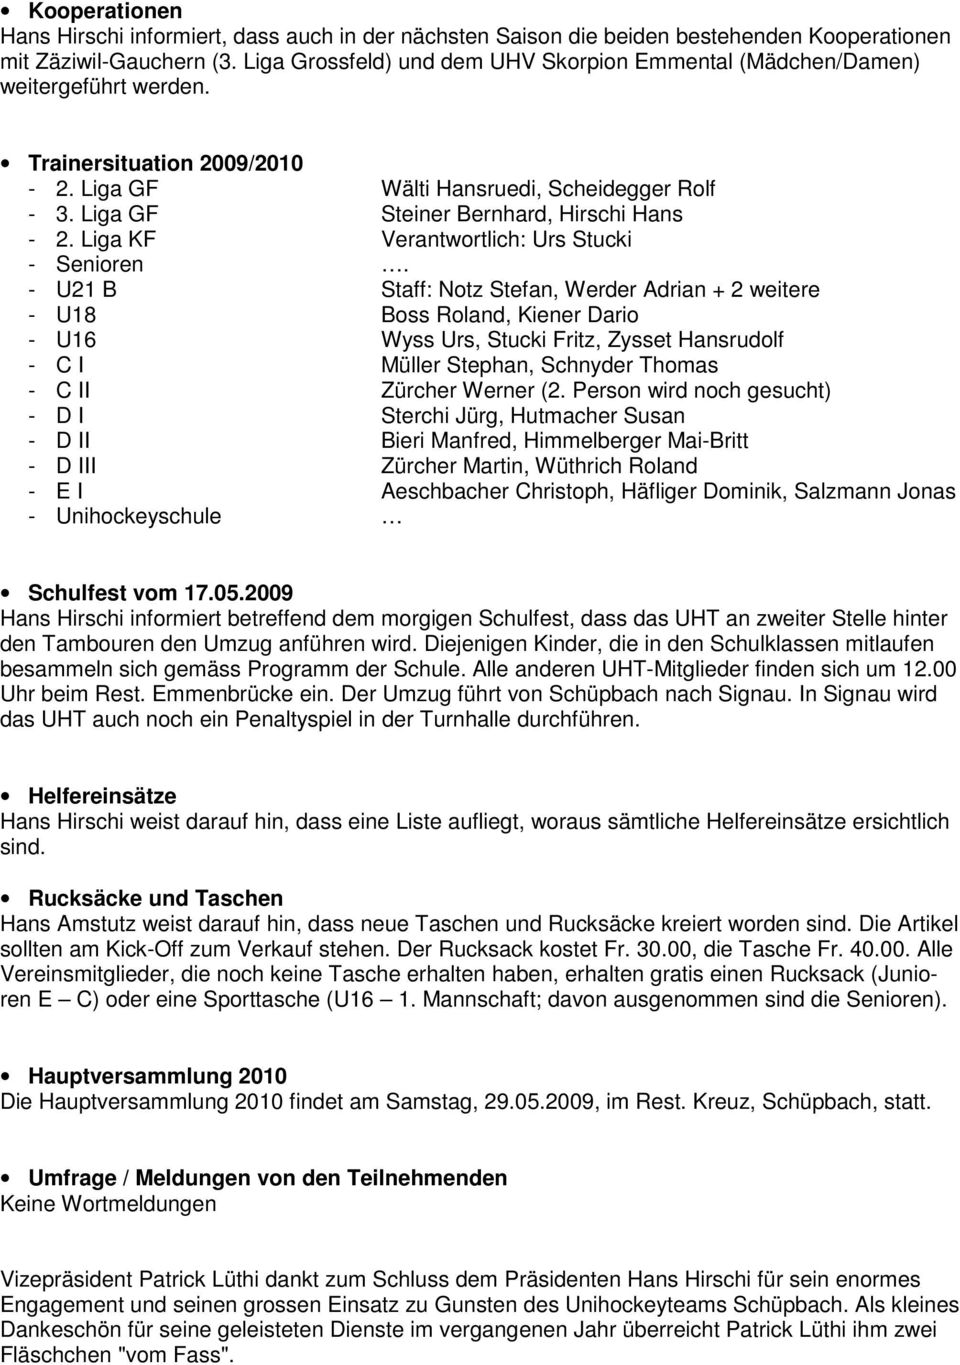 Liga GF Steiner Bernhard, Hirschi Hans - 2. Liga KF Verantwortlich: Urs Stucki - Senioren.